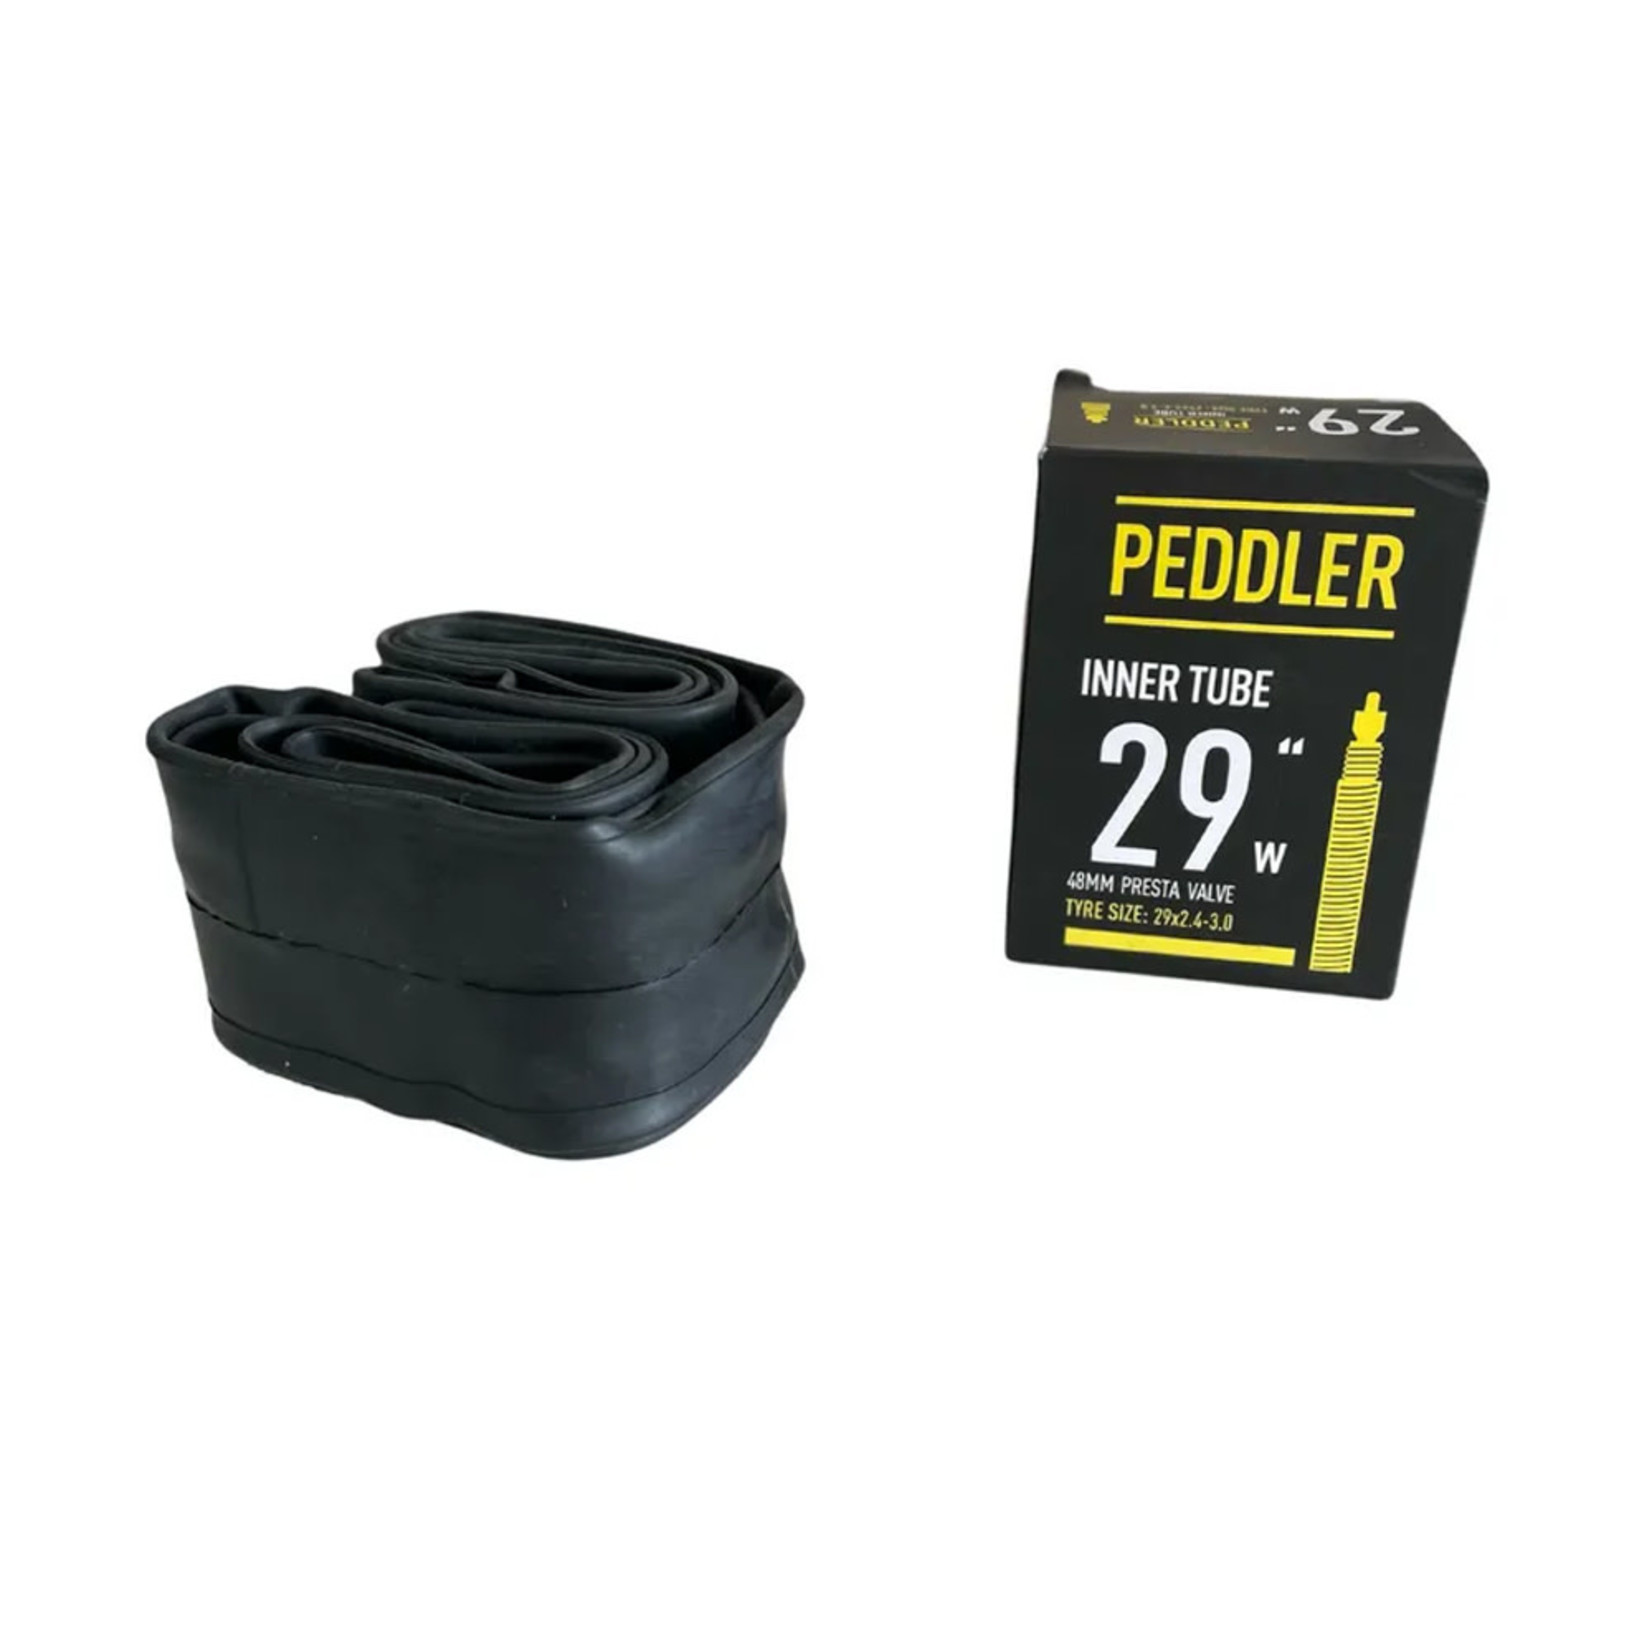 Bicycle Peddler Peddler Bike/Cycling Tube - 29 X 2.4-3.0 FV - 48 RVC - Pair